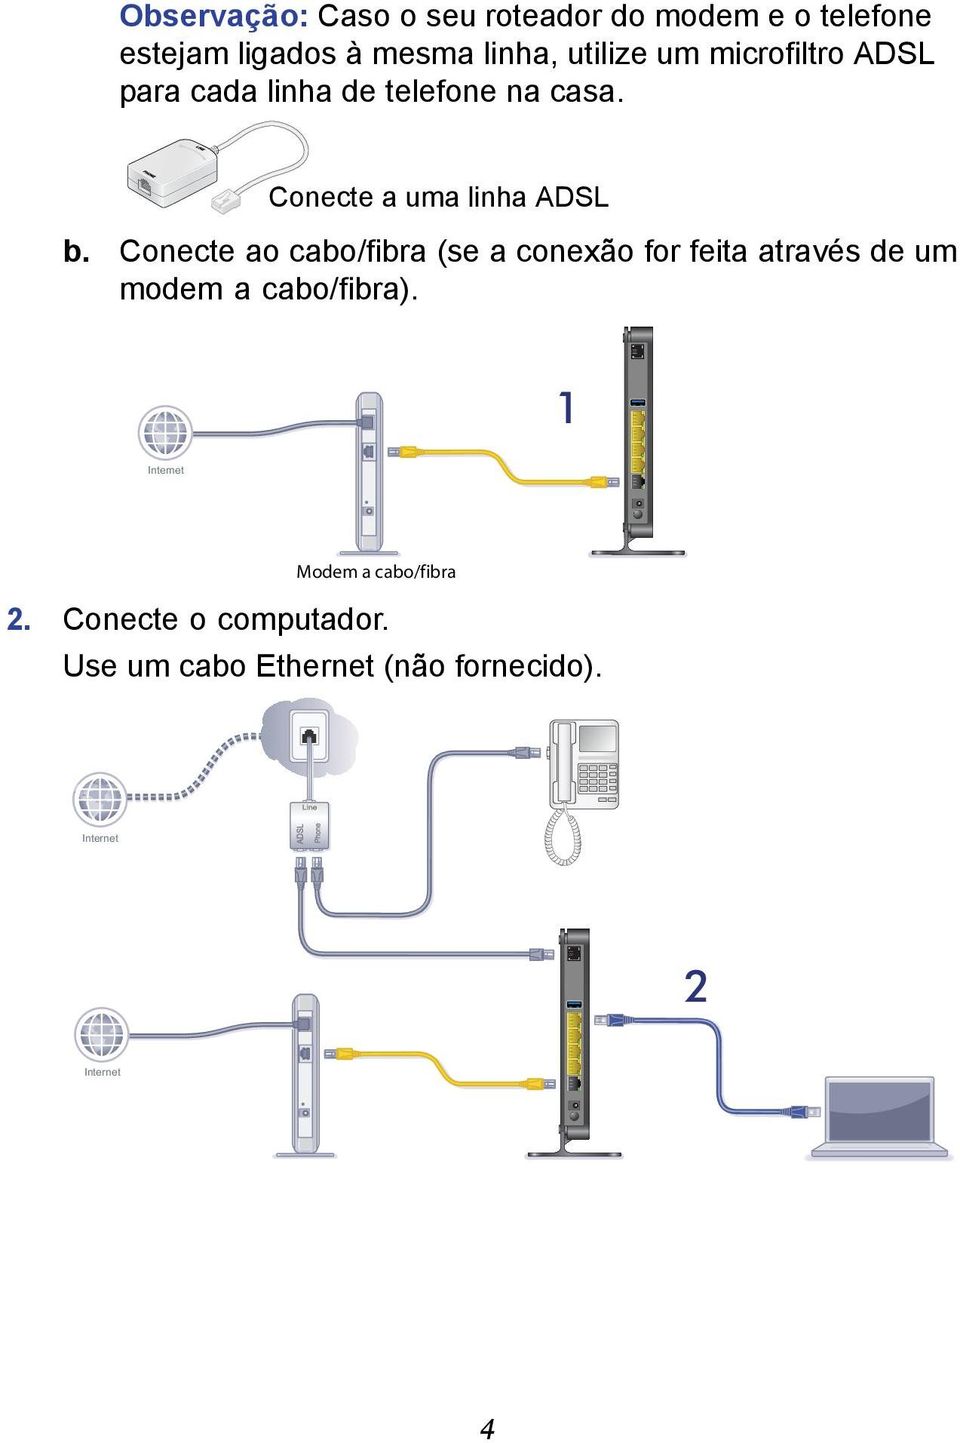 Conecte ao cabo/fibra (se a conexão for feita através de um modem a cabo/fibra).